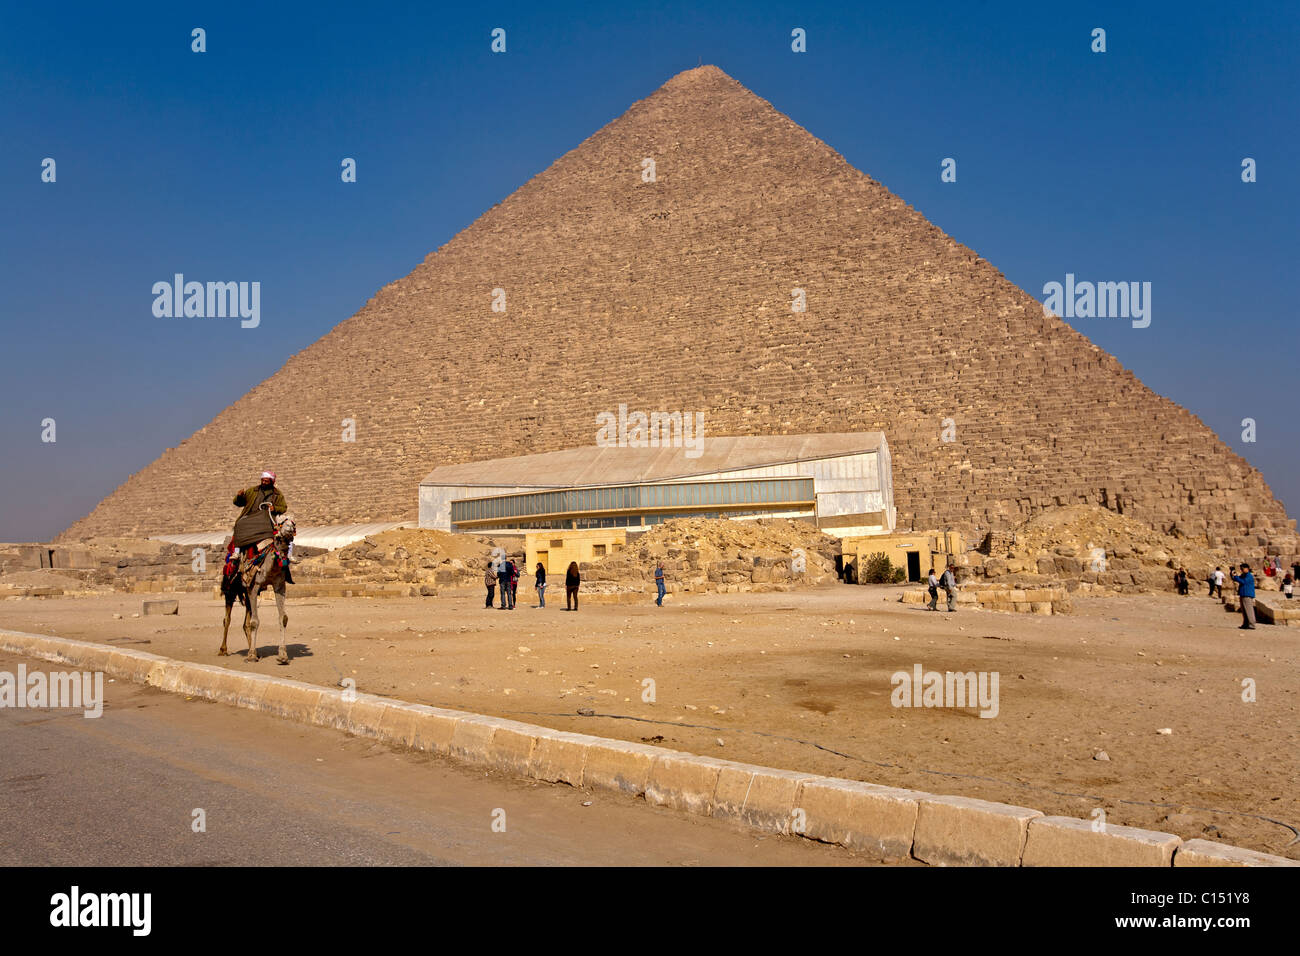 Pyramide des Cheops, die große Pyramide (das höchste), sitzt im Hintergrund wie das Solar Boat Museum angezeigt wird. Stockfoto